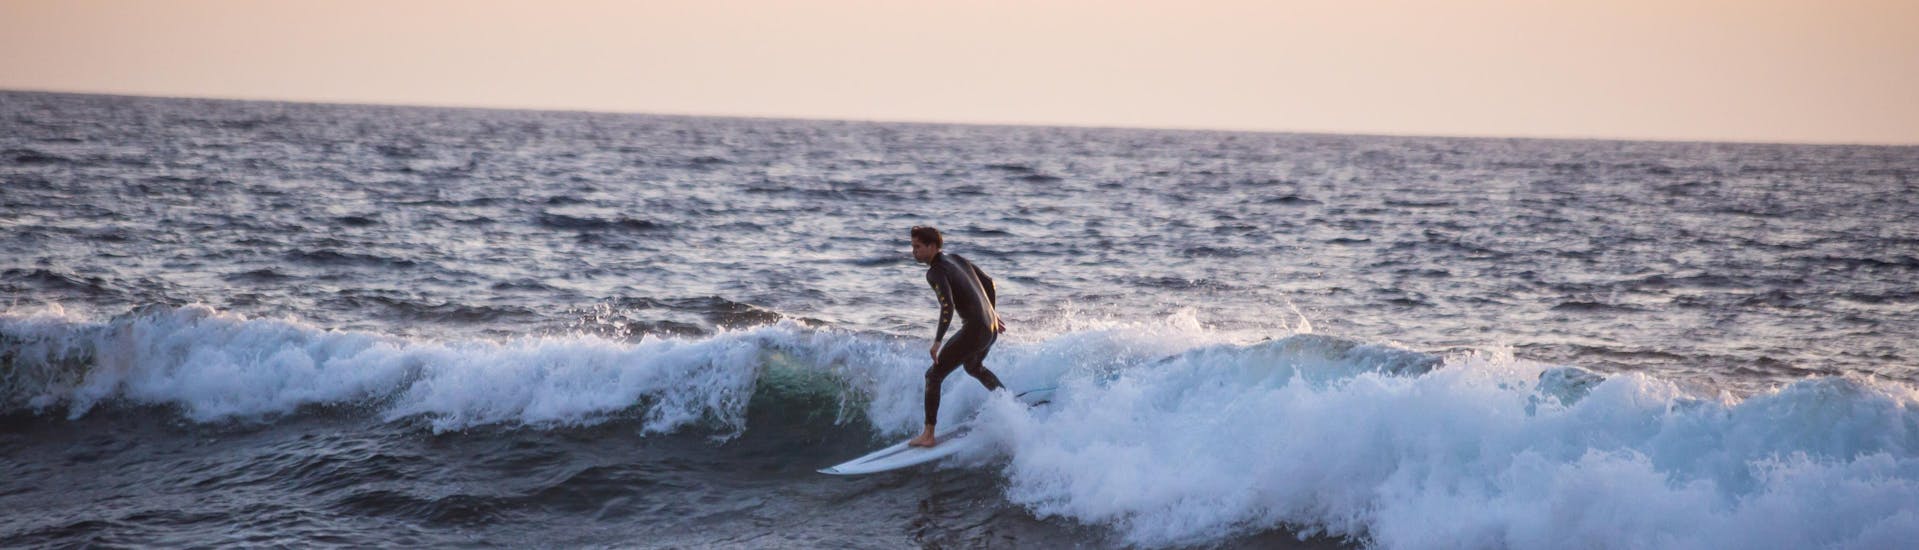 Un surfista surfea una ola en Playa de las Américas, un gran lugar para practicar el surf en Tenerife.